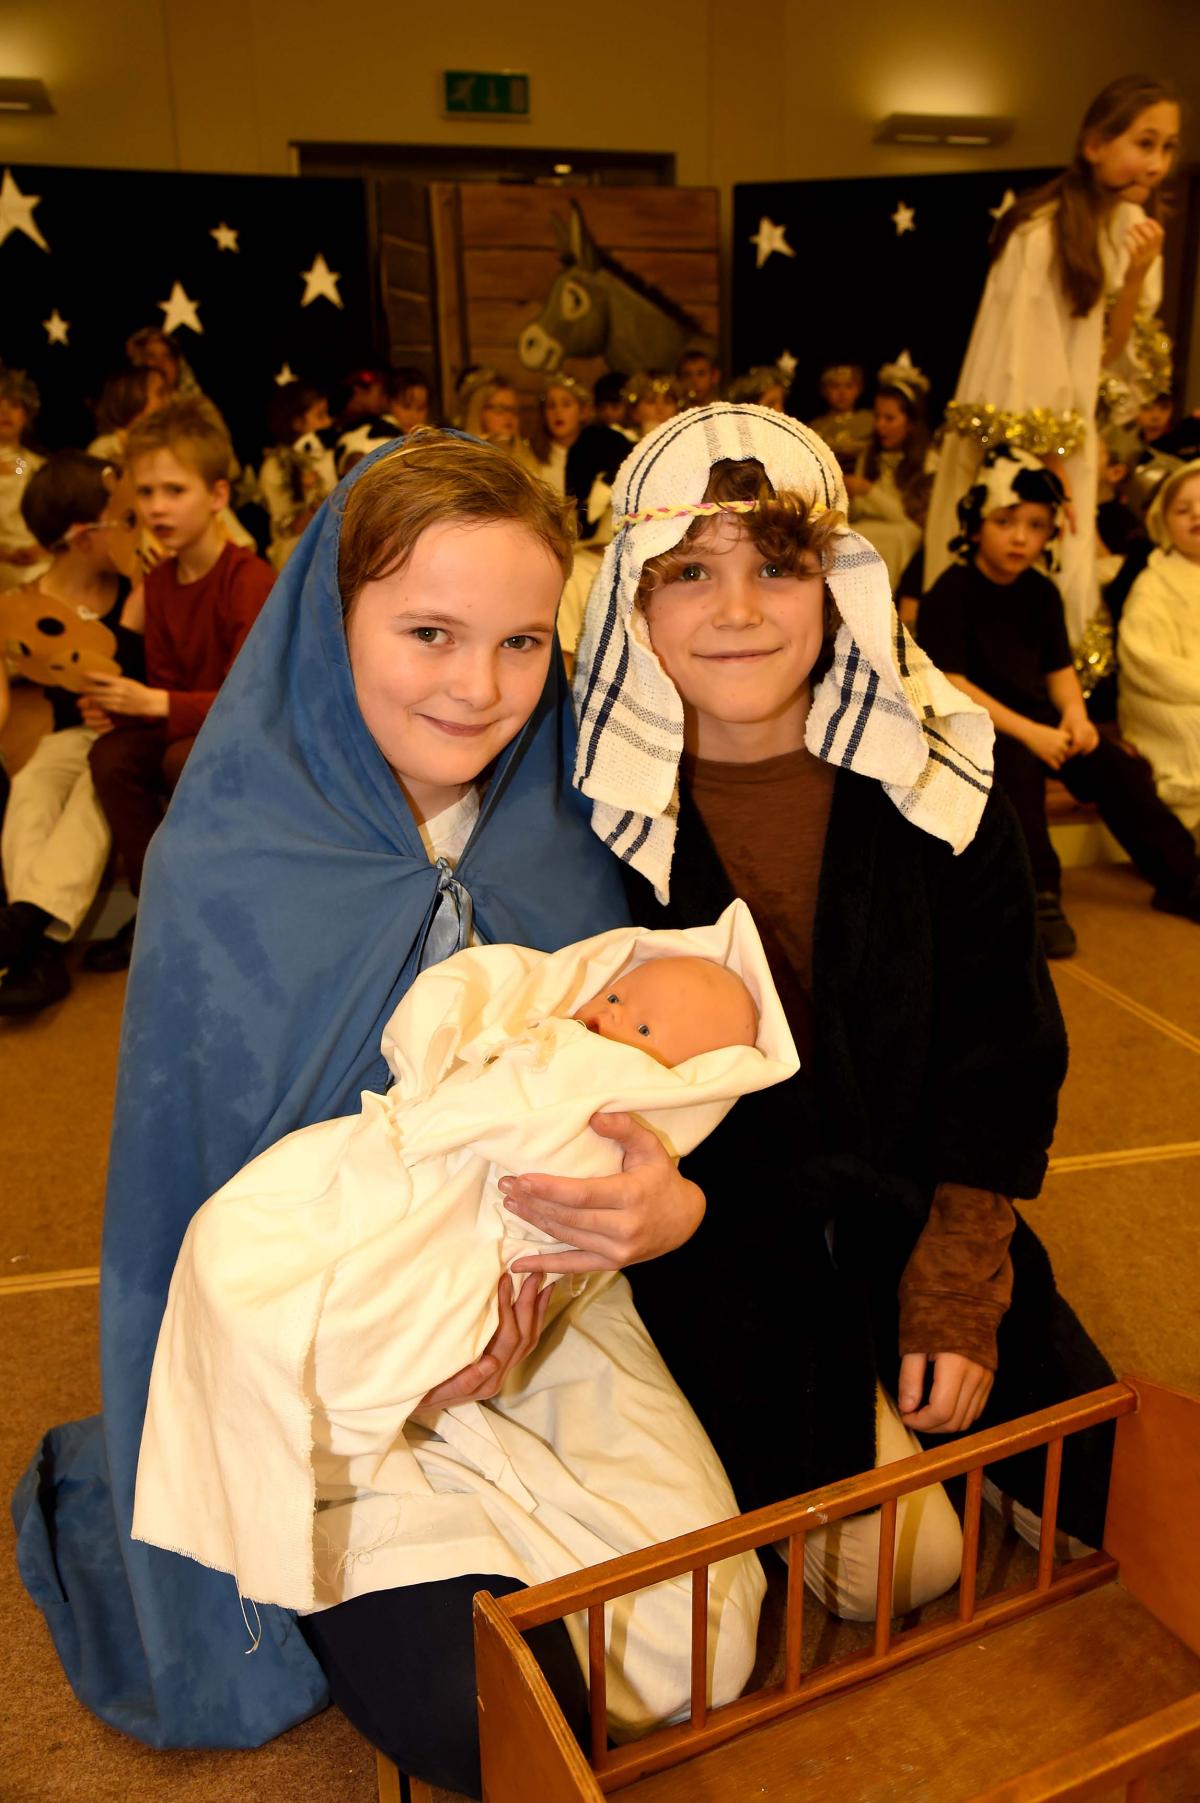 Nativity 2015